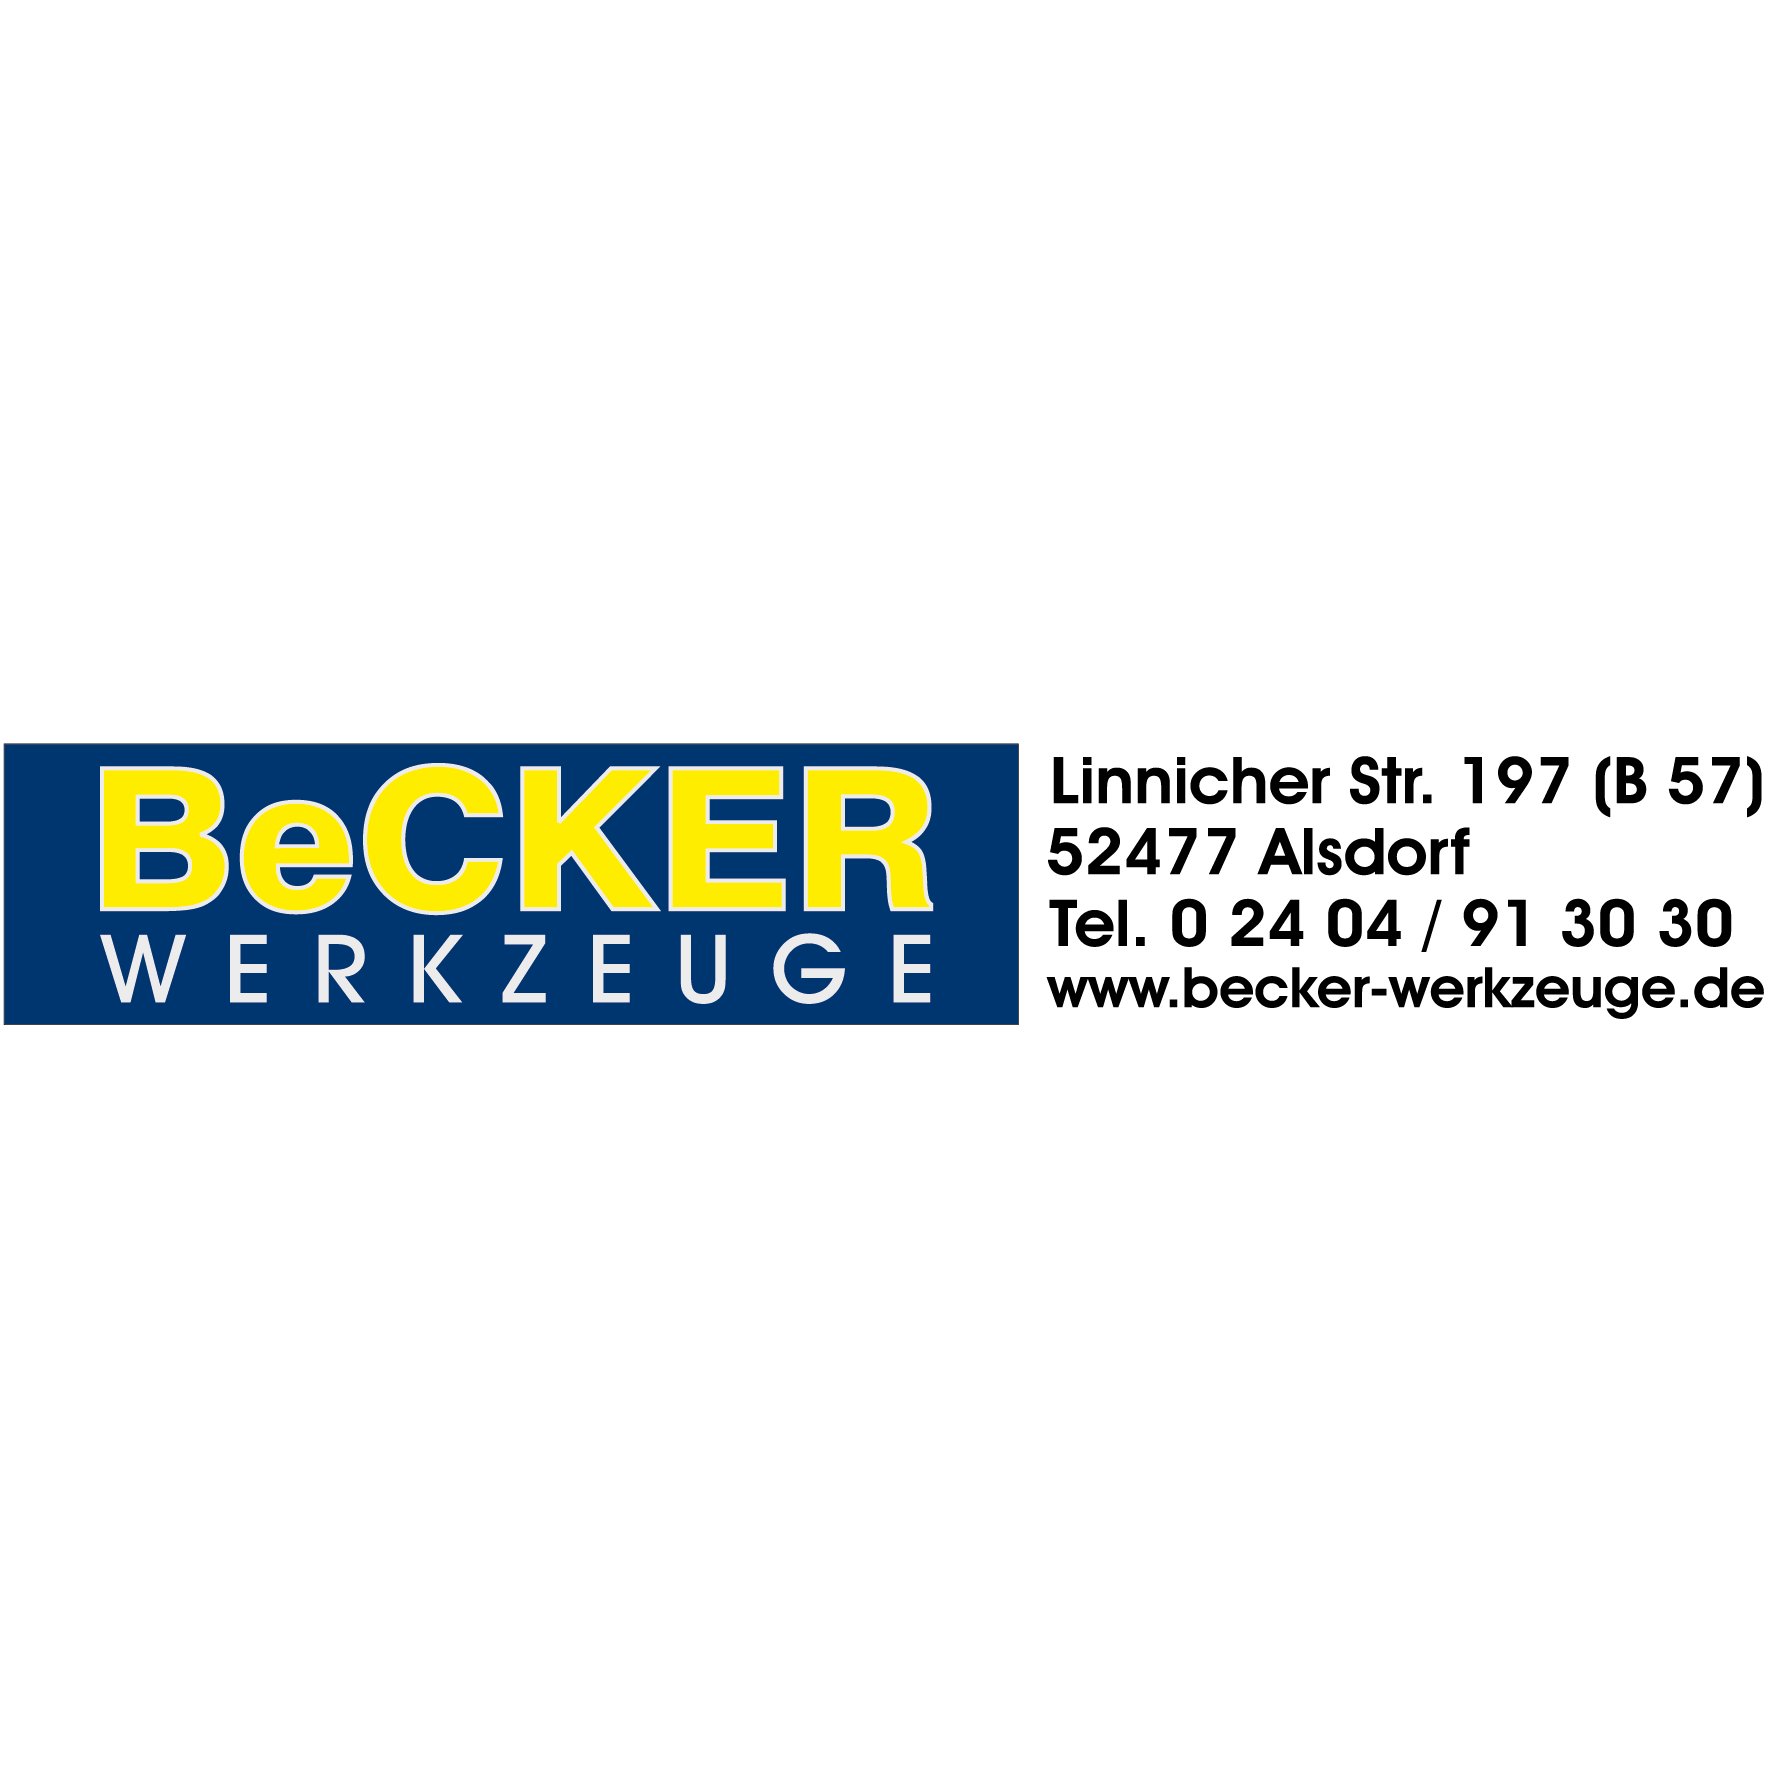 BeCKER - Werkzeuge  